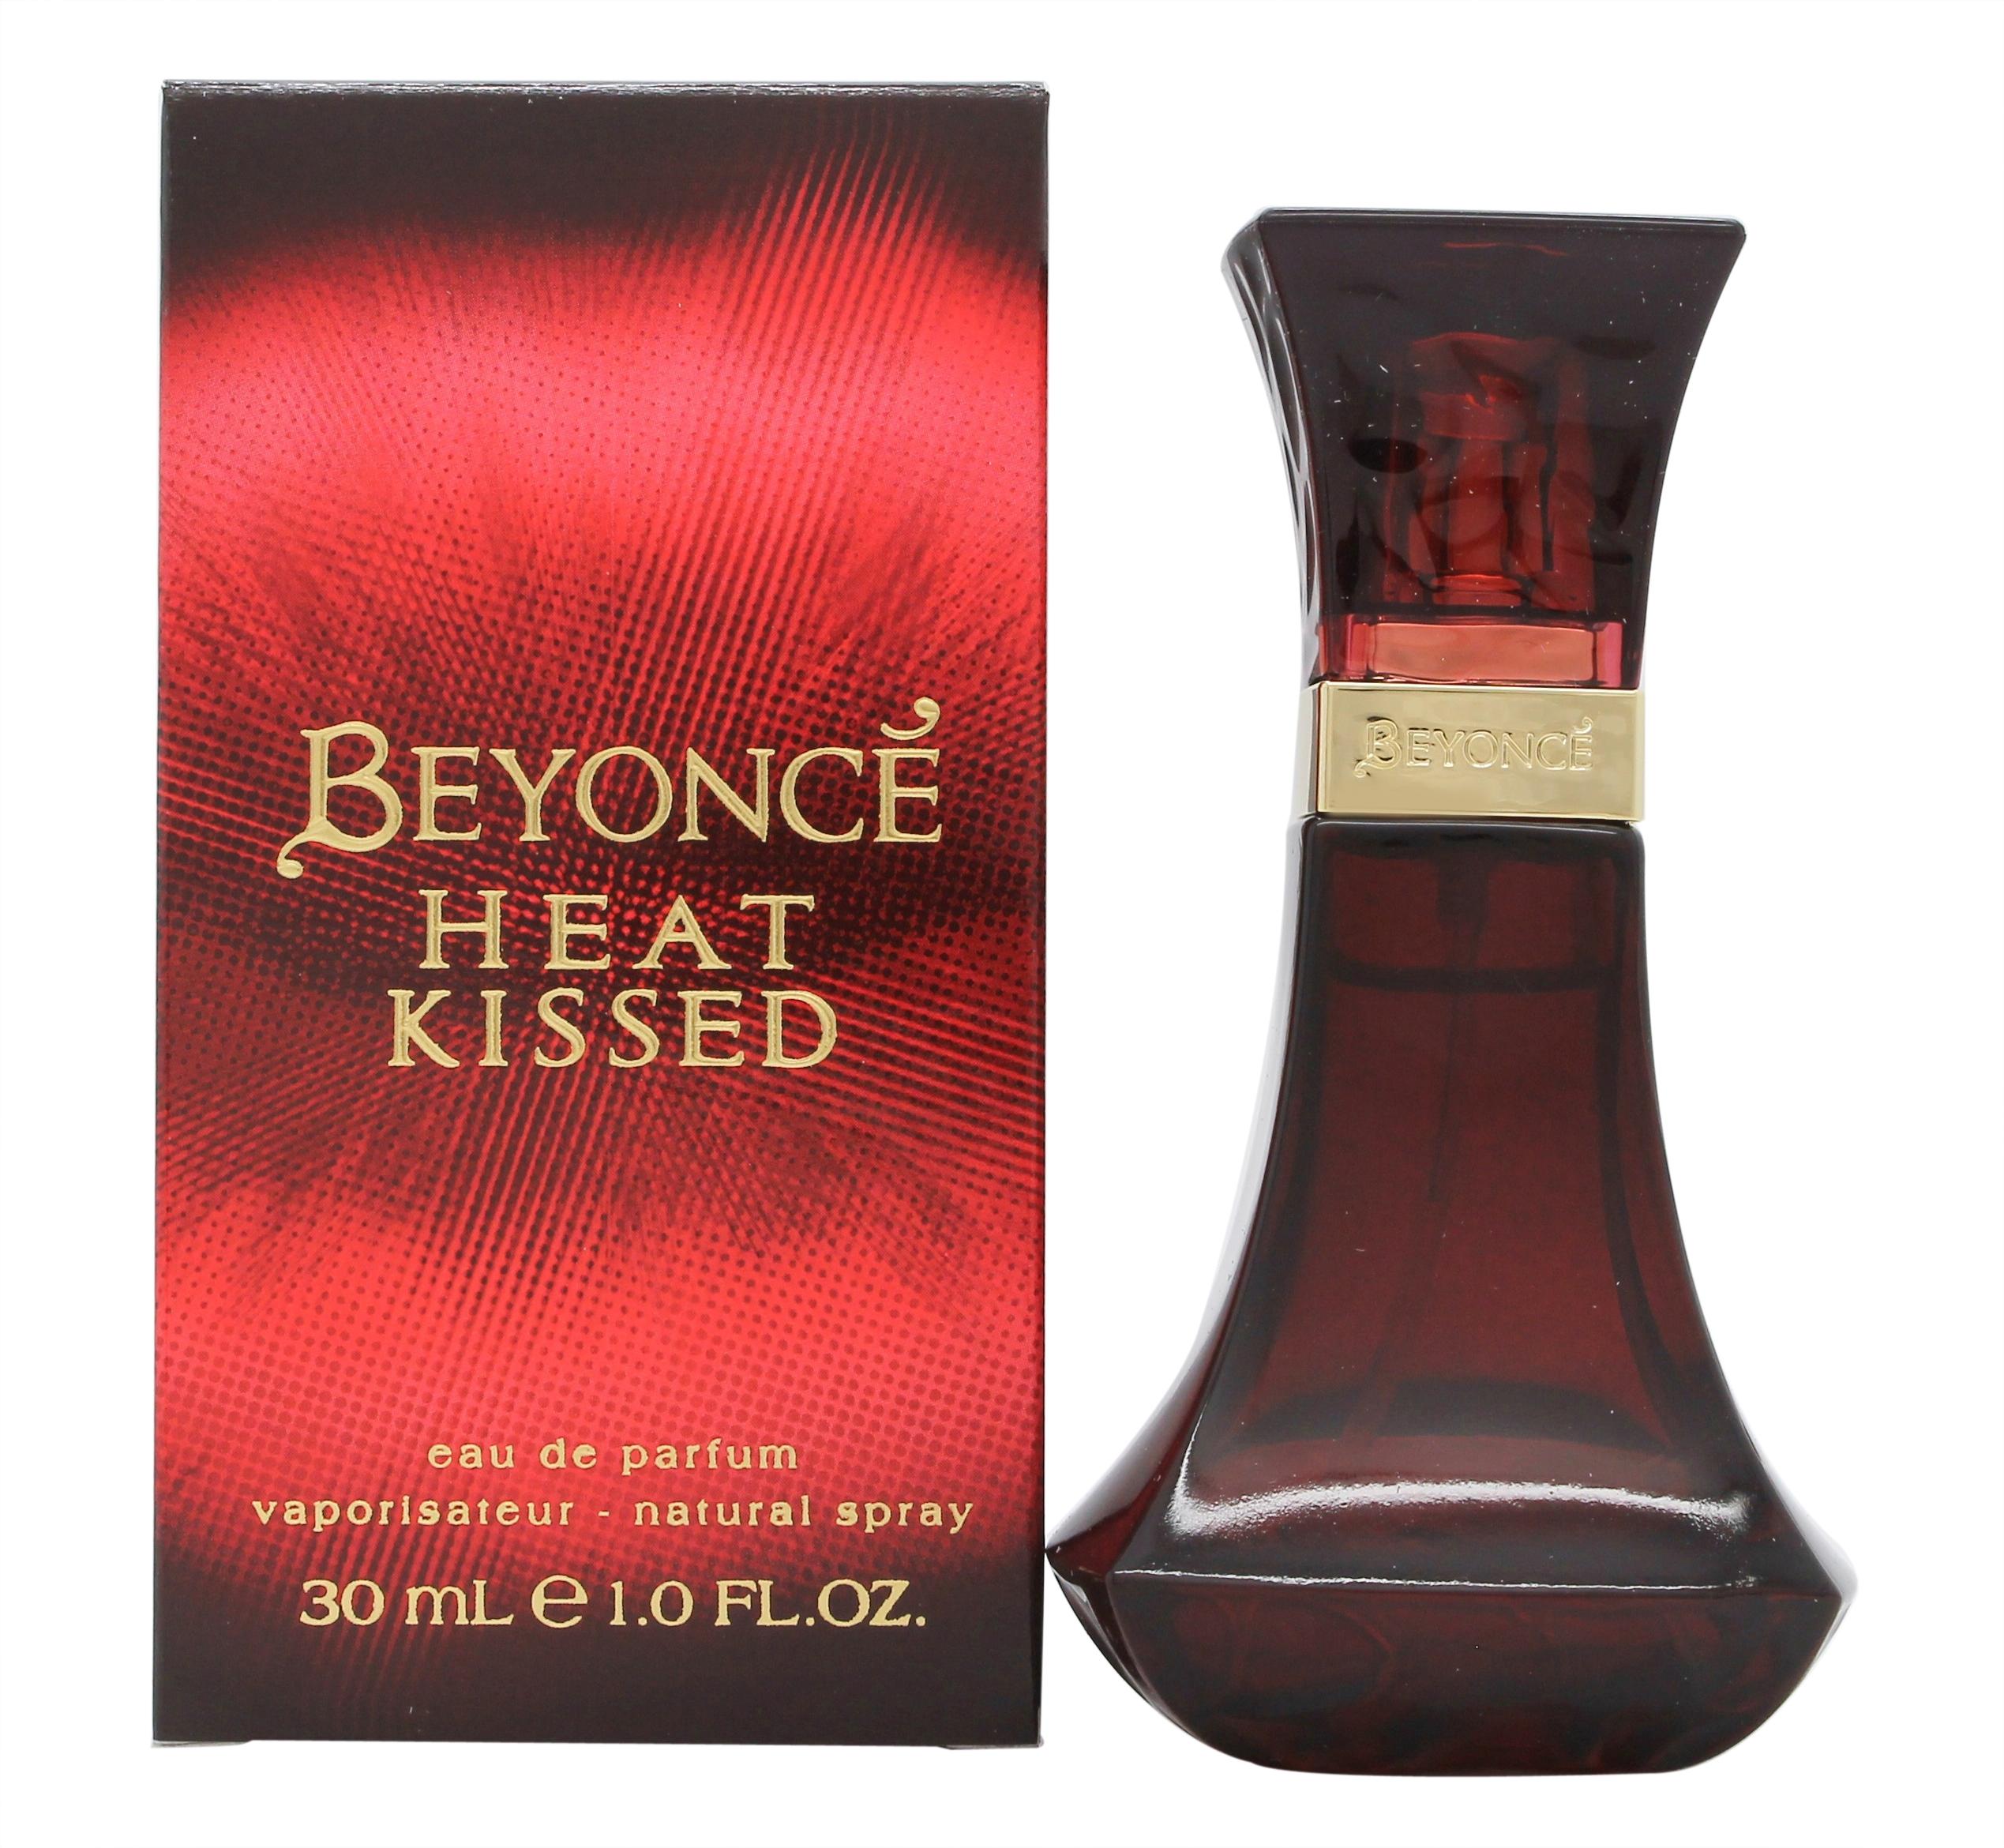 Beyonce Heat Kissed Eau de Parfum 30ml Spray